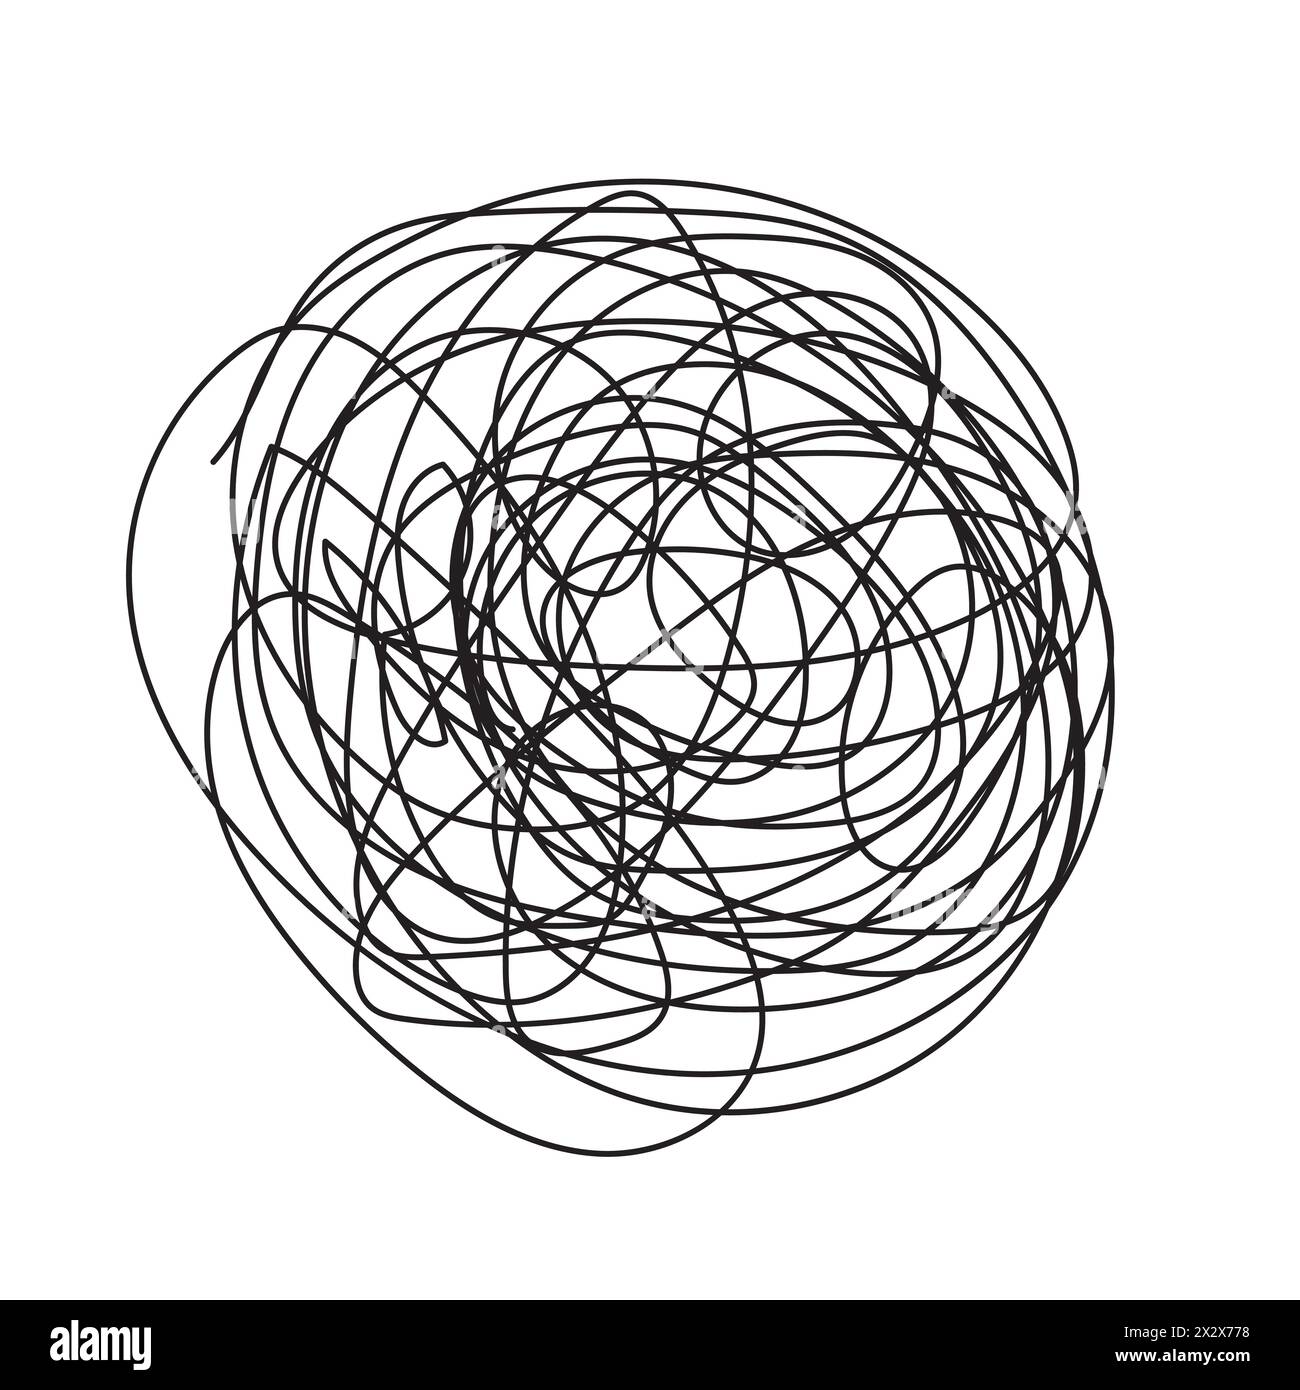 Abstrakte Scribble-Kunst. Chaotisches Design mit verworrenen Linien. Ausdruck Schwarz auf weiß. Vektorabbildung. EPS 10. Stock Vektor